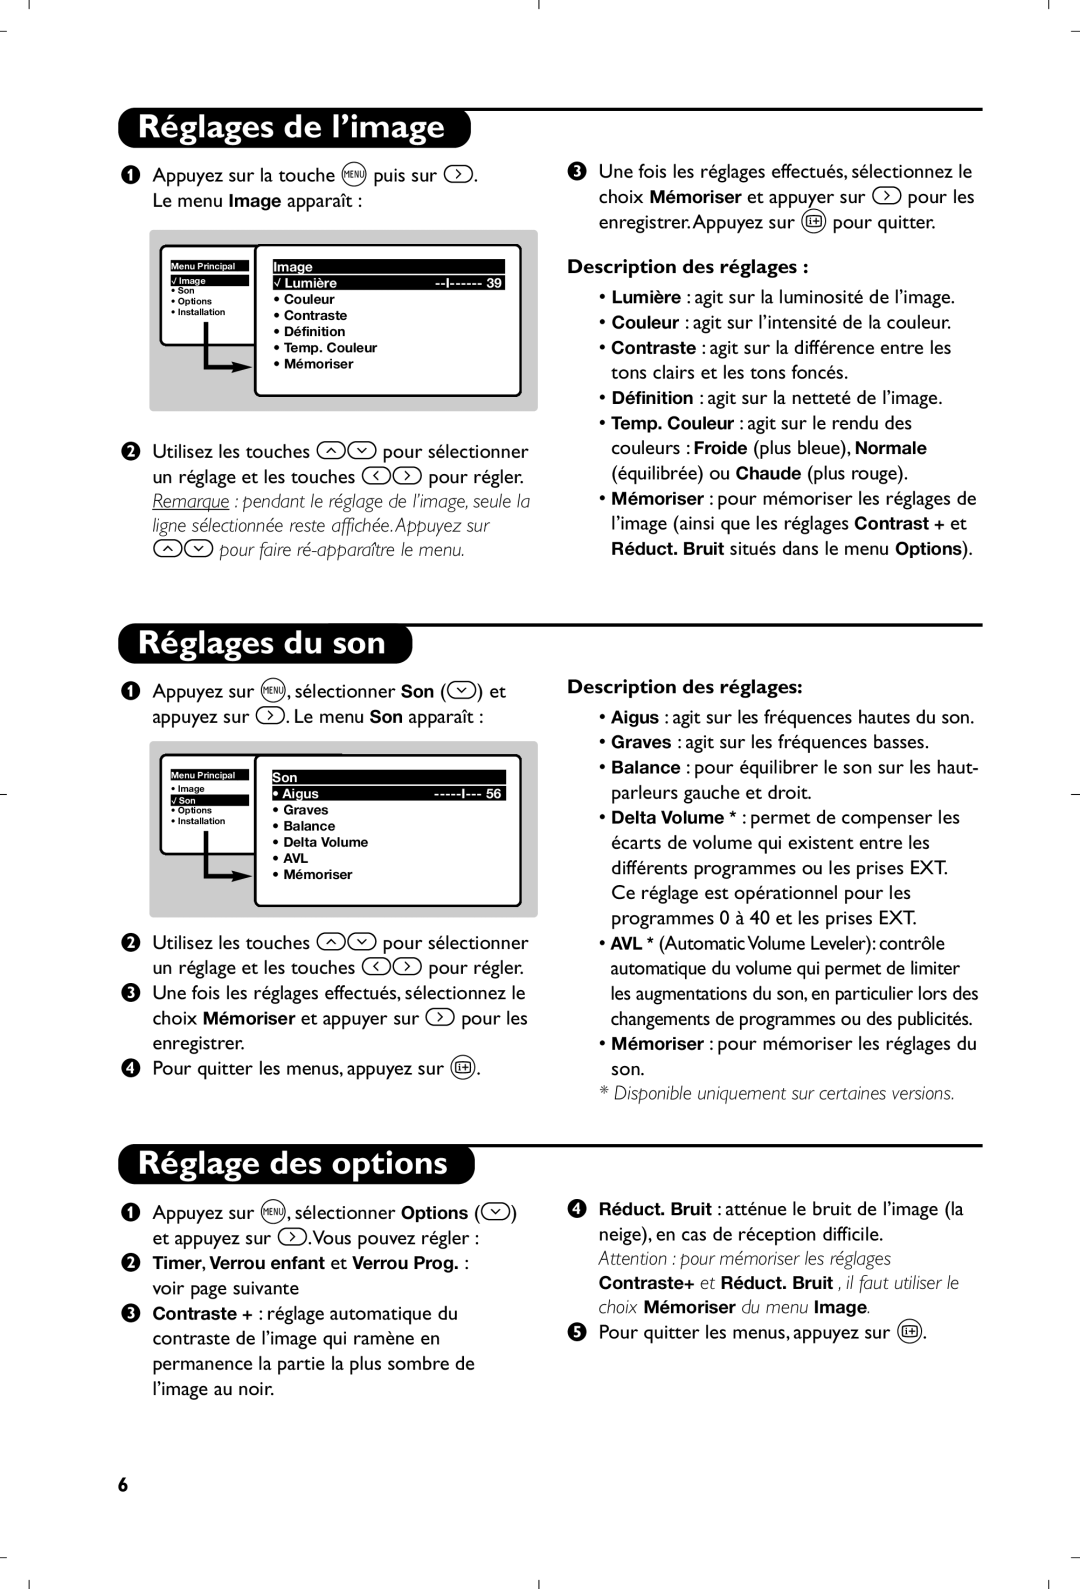 Philips 21PT4457/58 manual Réglages de l’image, Réglages du son, Réglage des options, Description des réglages 